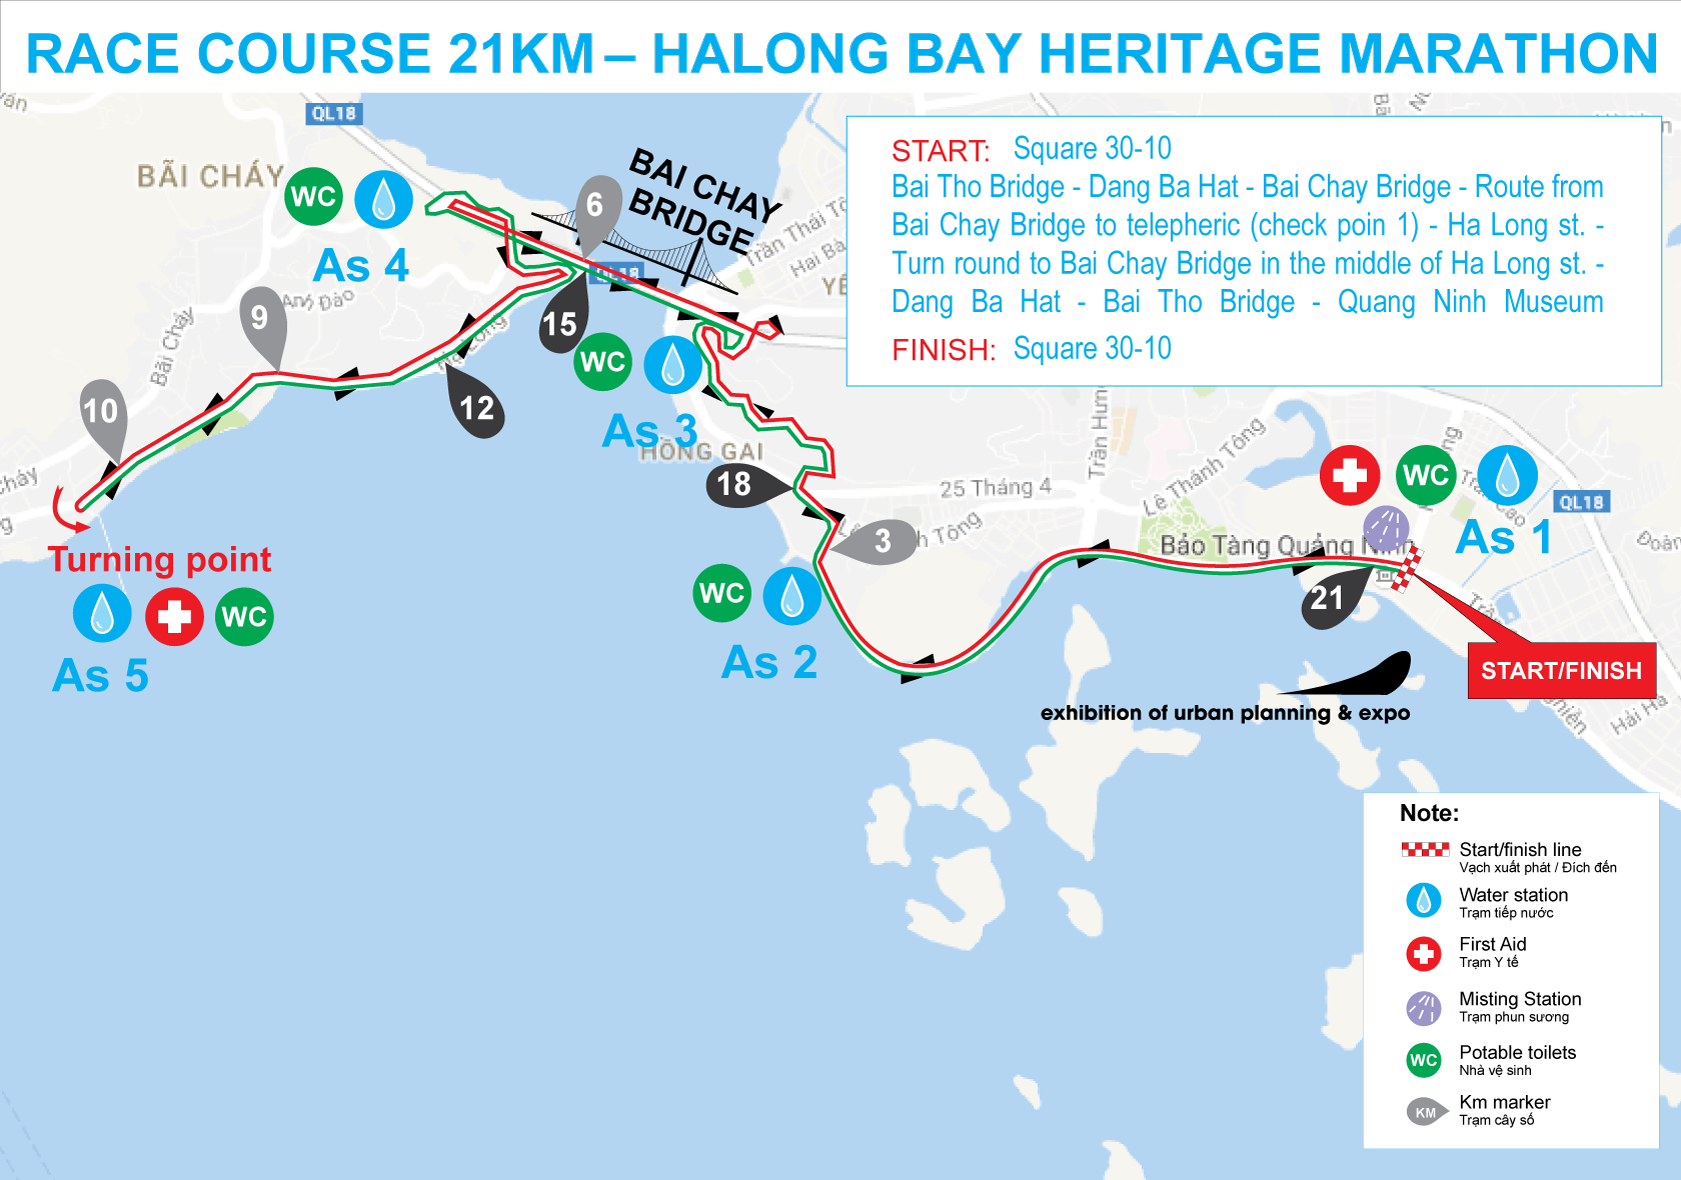 Sơ đồ đường chạy 21km Halong Bay Heritage Marathon 2017. Ảnh: BTC